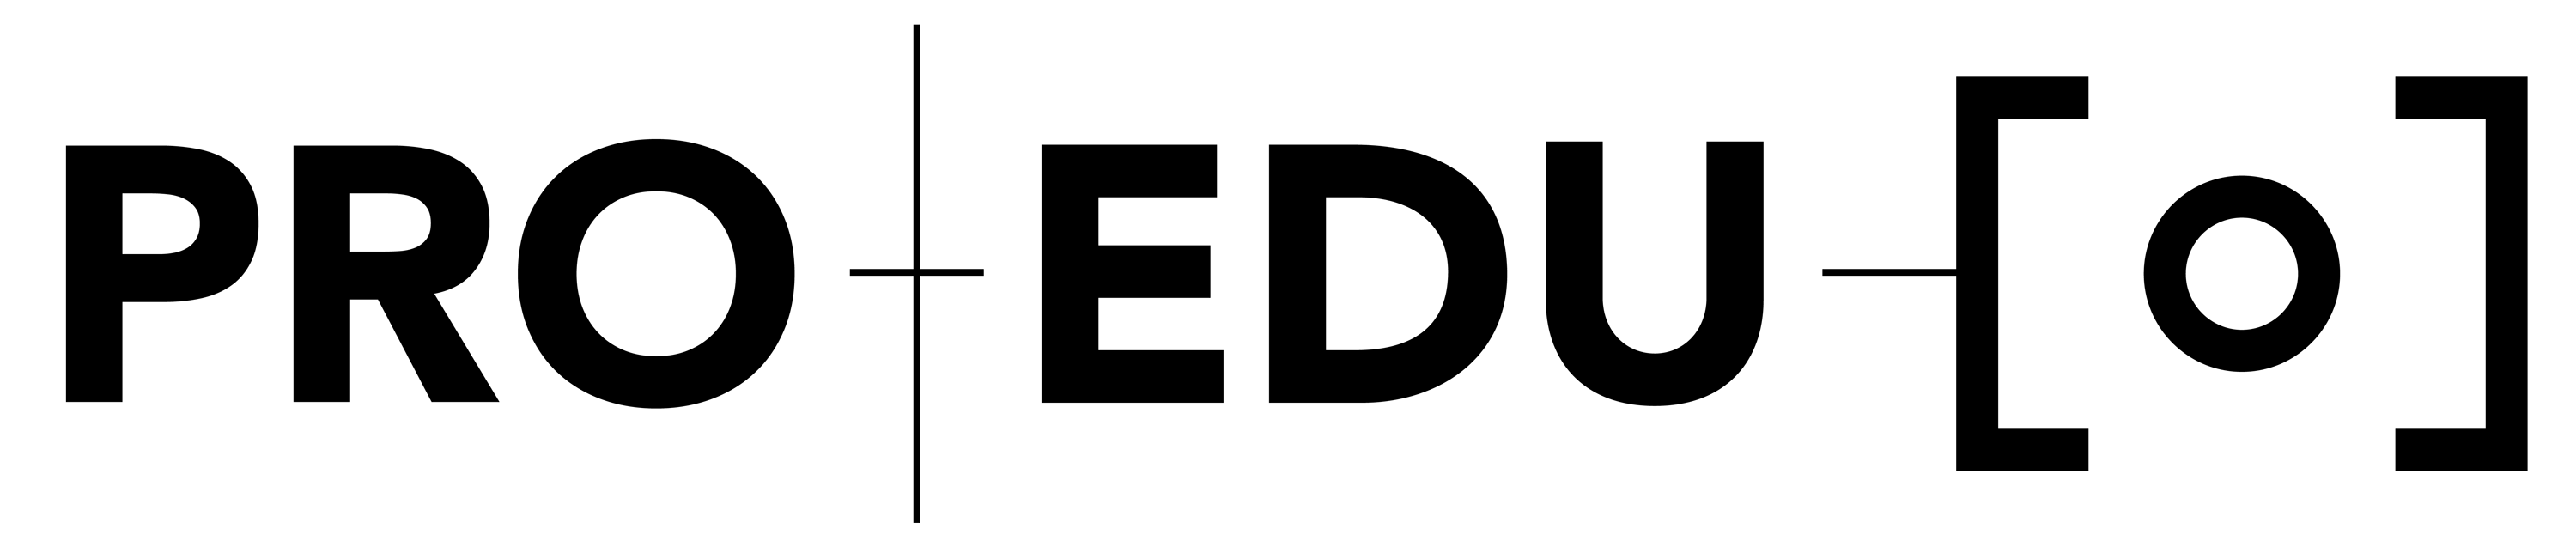 Black PRO EDU Logo - Full One Line